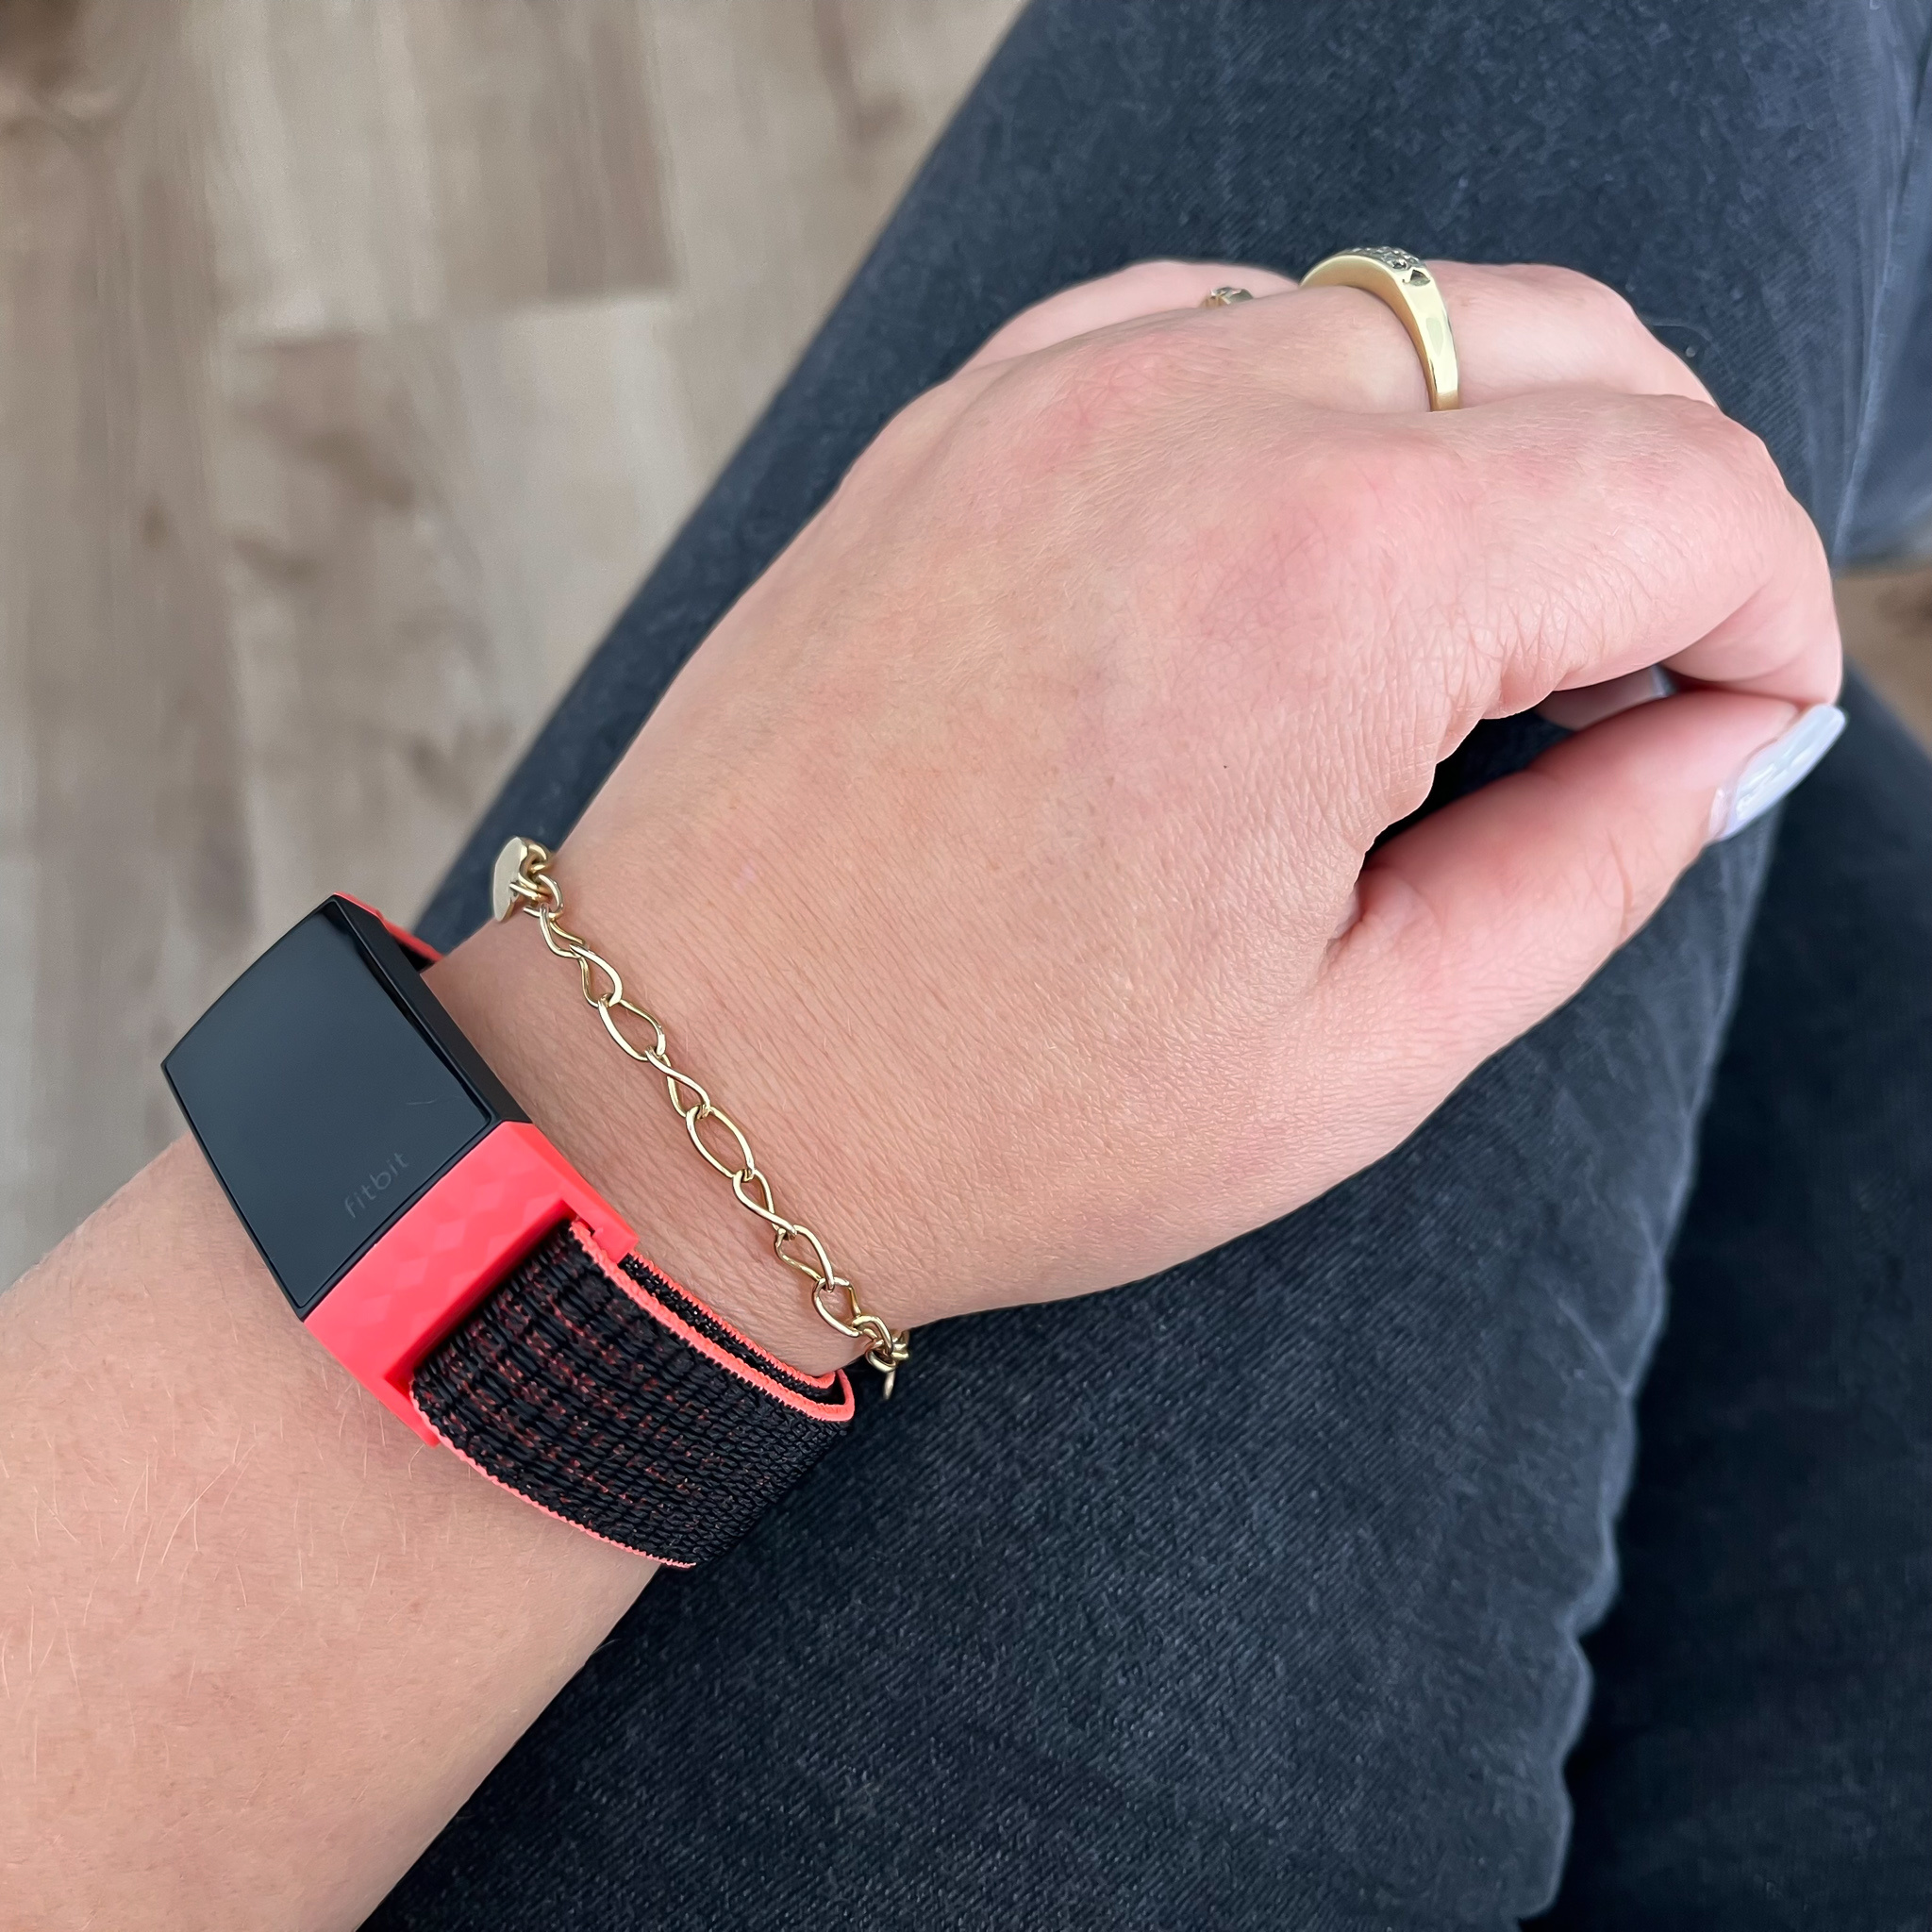 Bracelet boucle sport en nylon Fitbit Charge 3 & 4 - rose noir